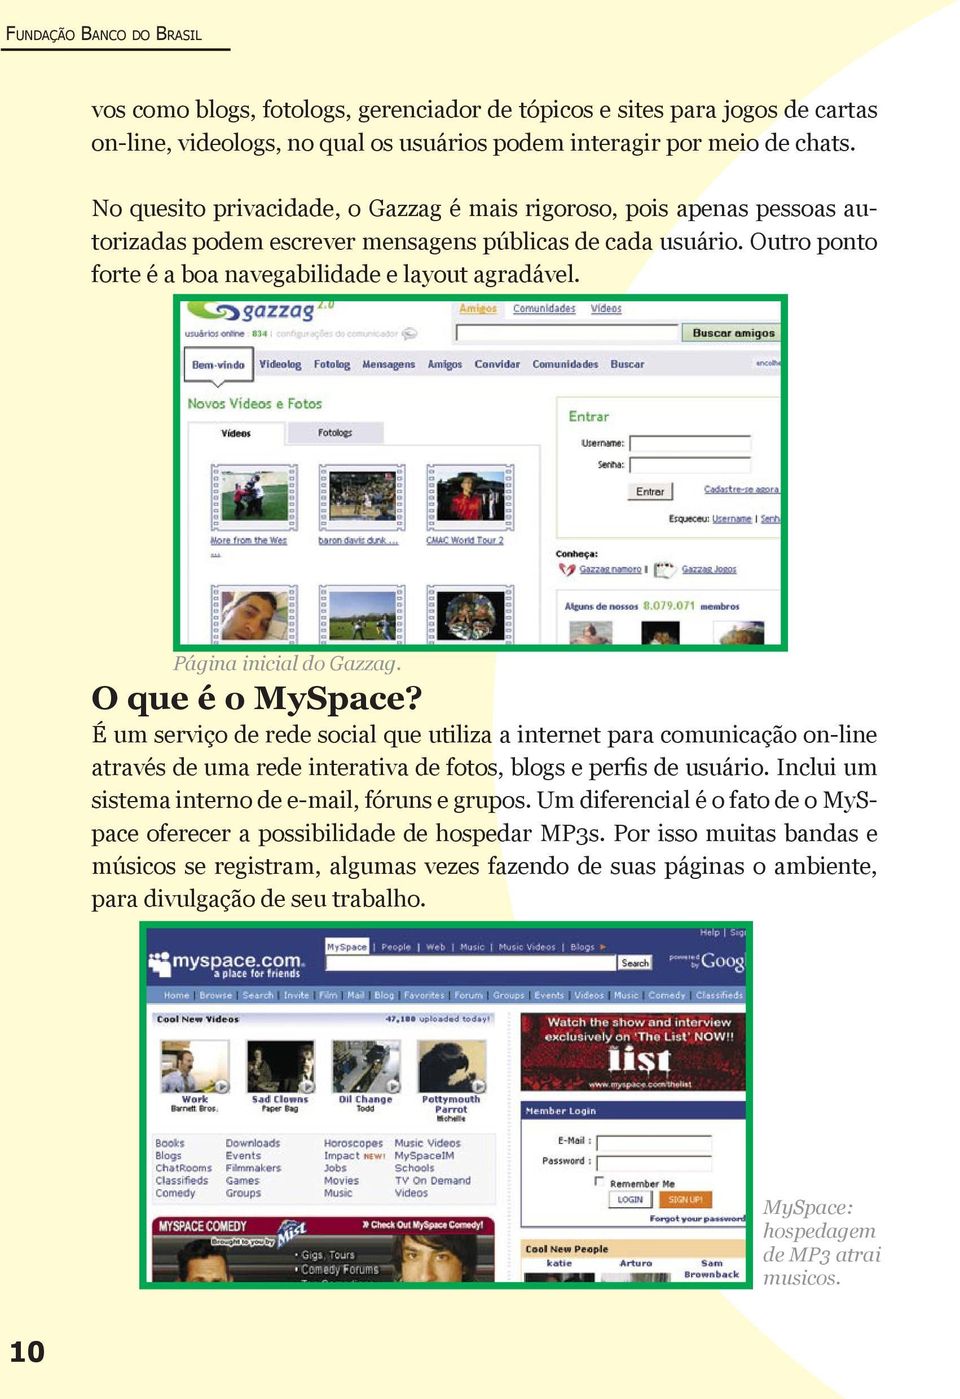 Página inicial do Gazzag. O que é o MySpace? É um serviço de rede social que utiliza a internet para comunicação on-line através de uma rede interativa de fotos, blogs e perfis de usuário.